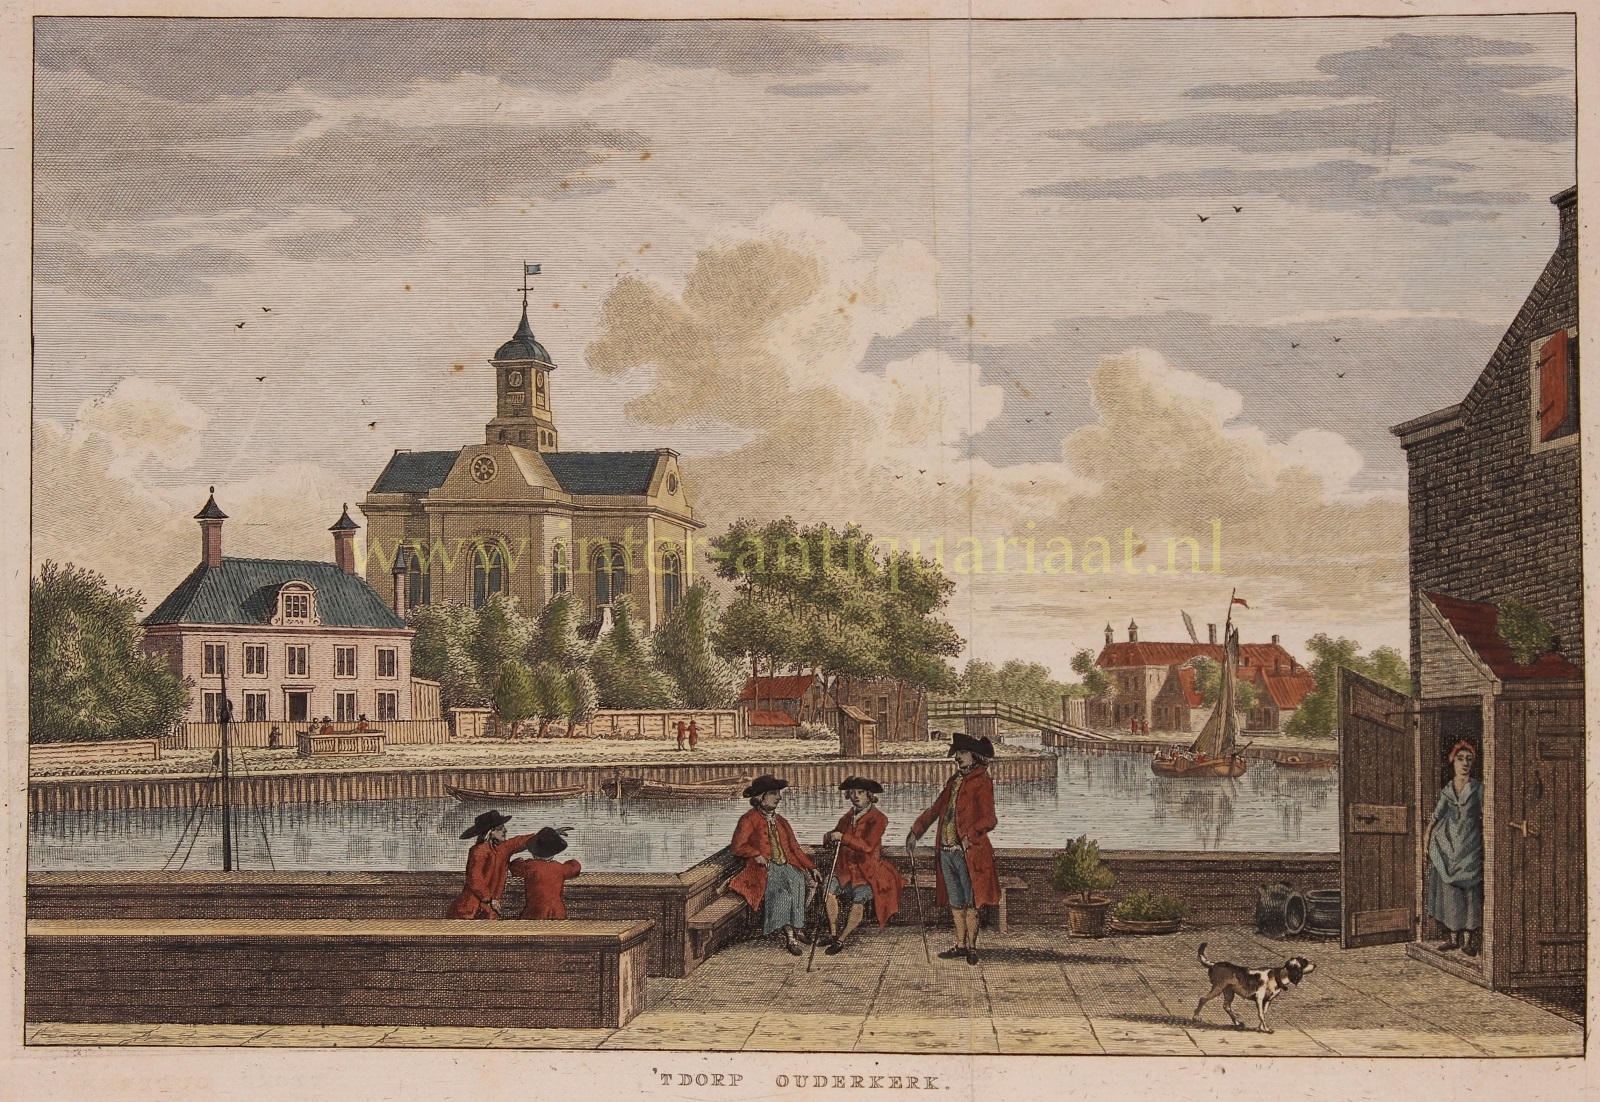  - Ouderkerk aan de Amstel - Karel Frederik Bendorp after Jan Bulthuis, 1786-1792